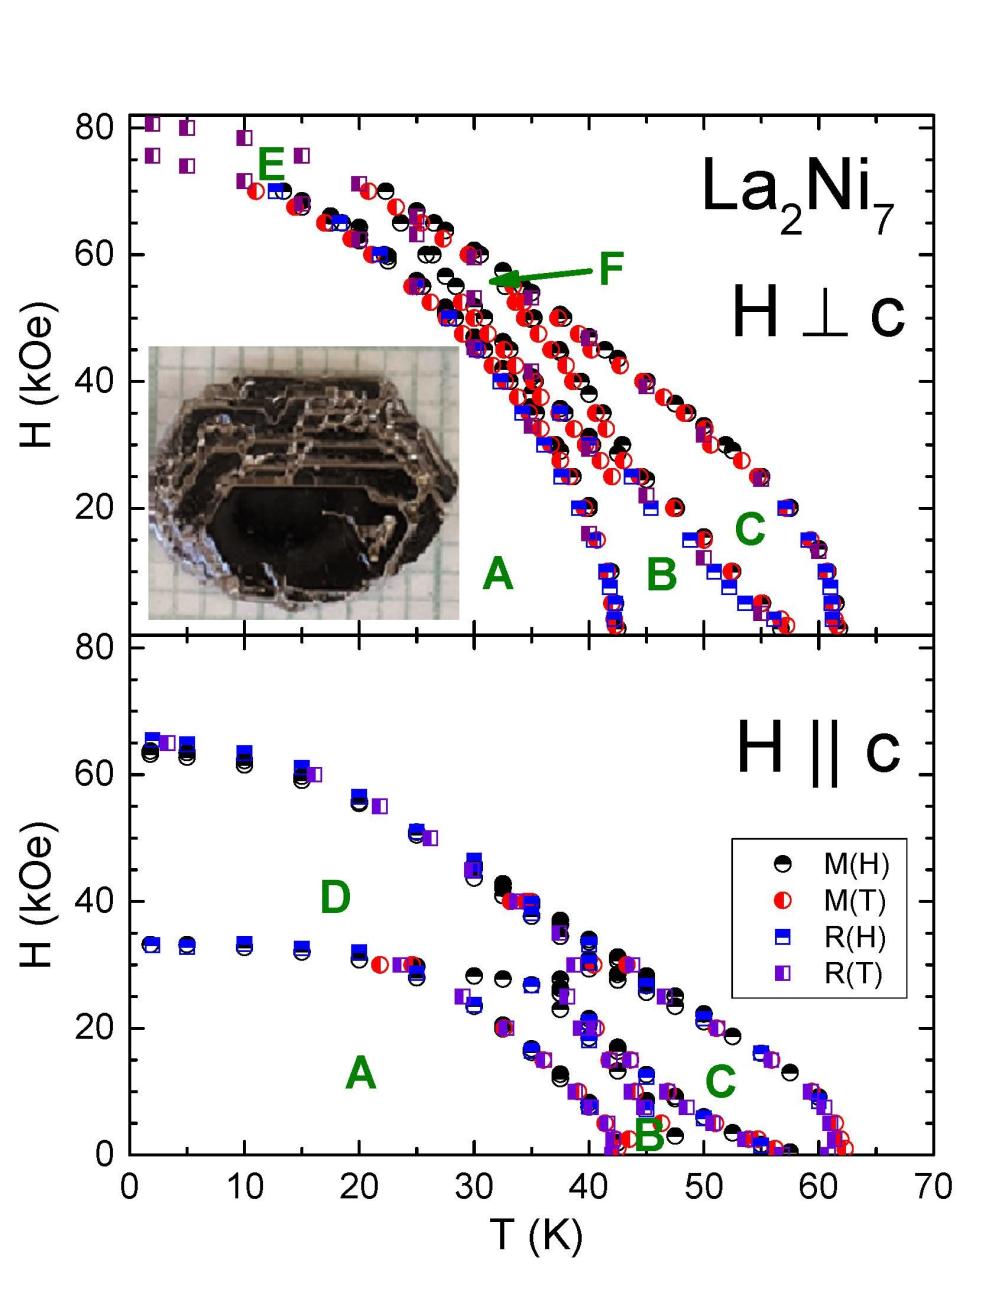 Magnetic Field vs Temperature phase diagram of La2Ni7